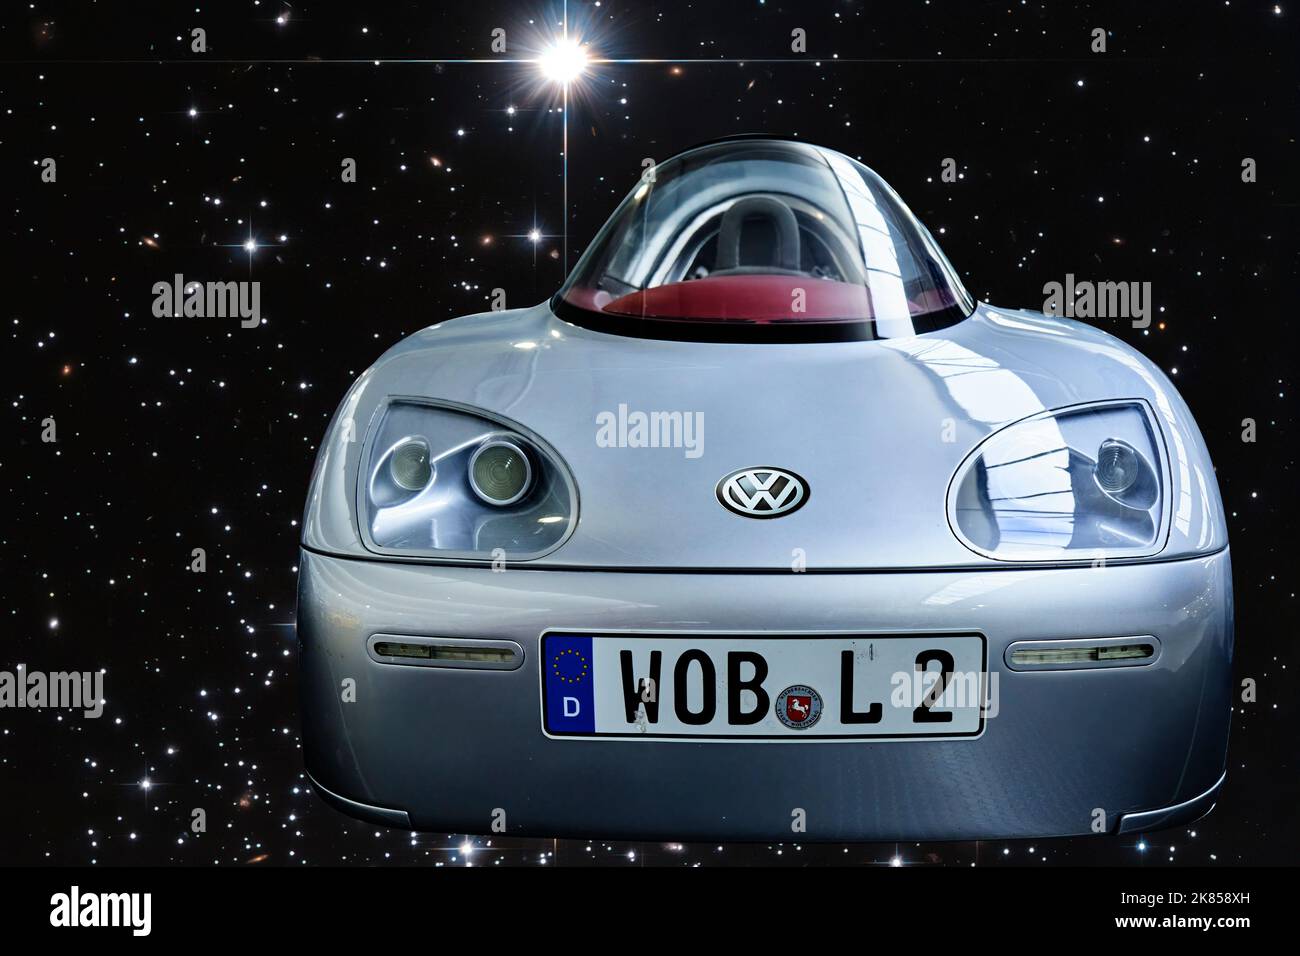 VW L2 1-Liter-Auto, Vorderansicht eines stromlinförmigen Fahrzeugs, verbraucht nur einen Liter Diesel für 100 Kilometer, zusammengesetzt gegen futuristische Sterne Stockfoto